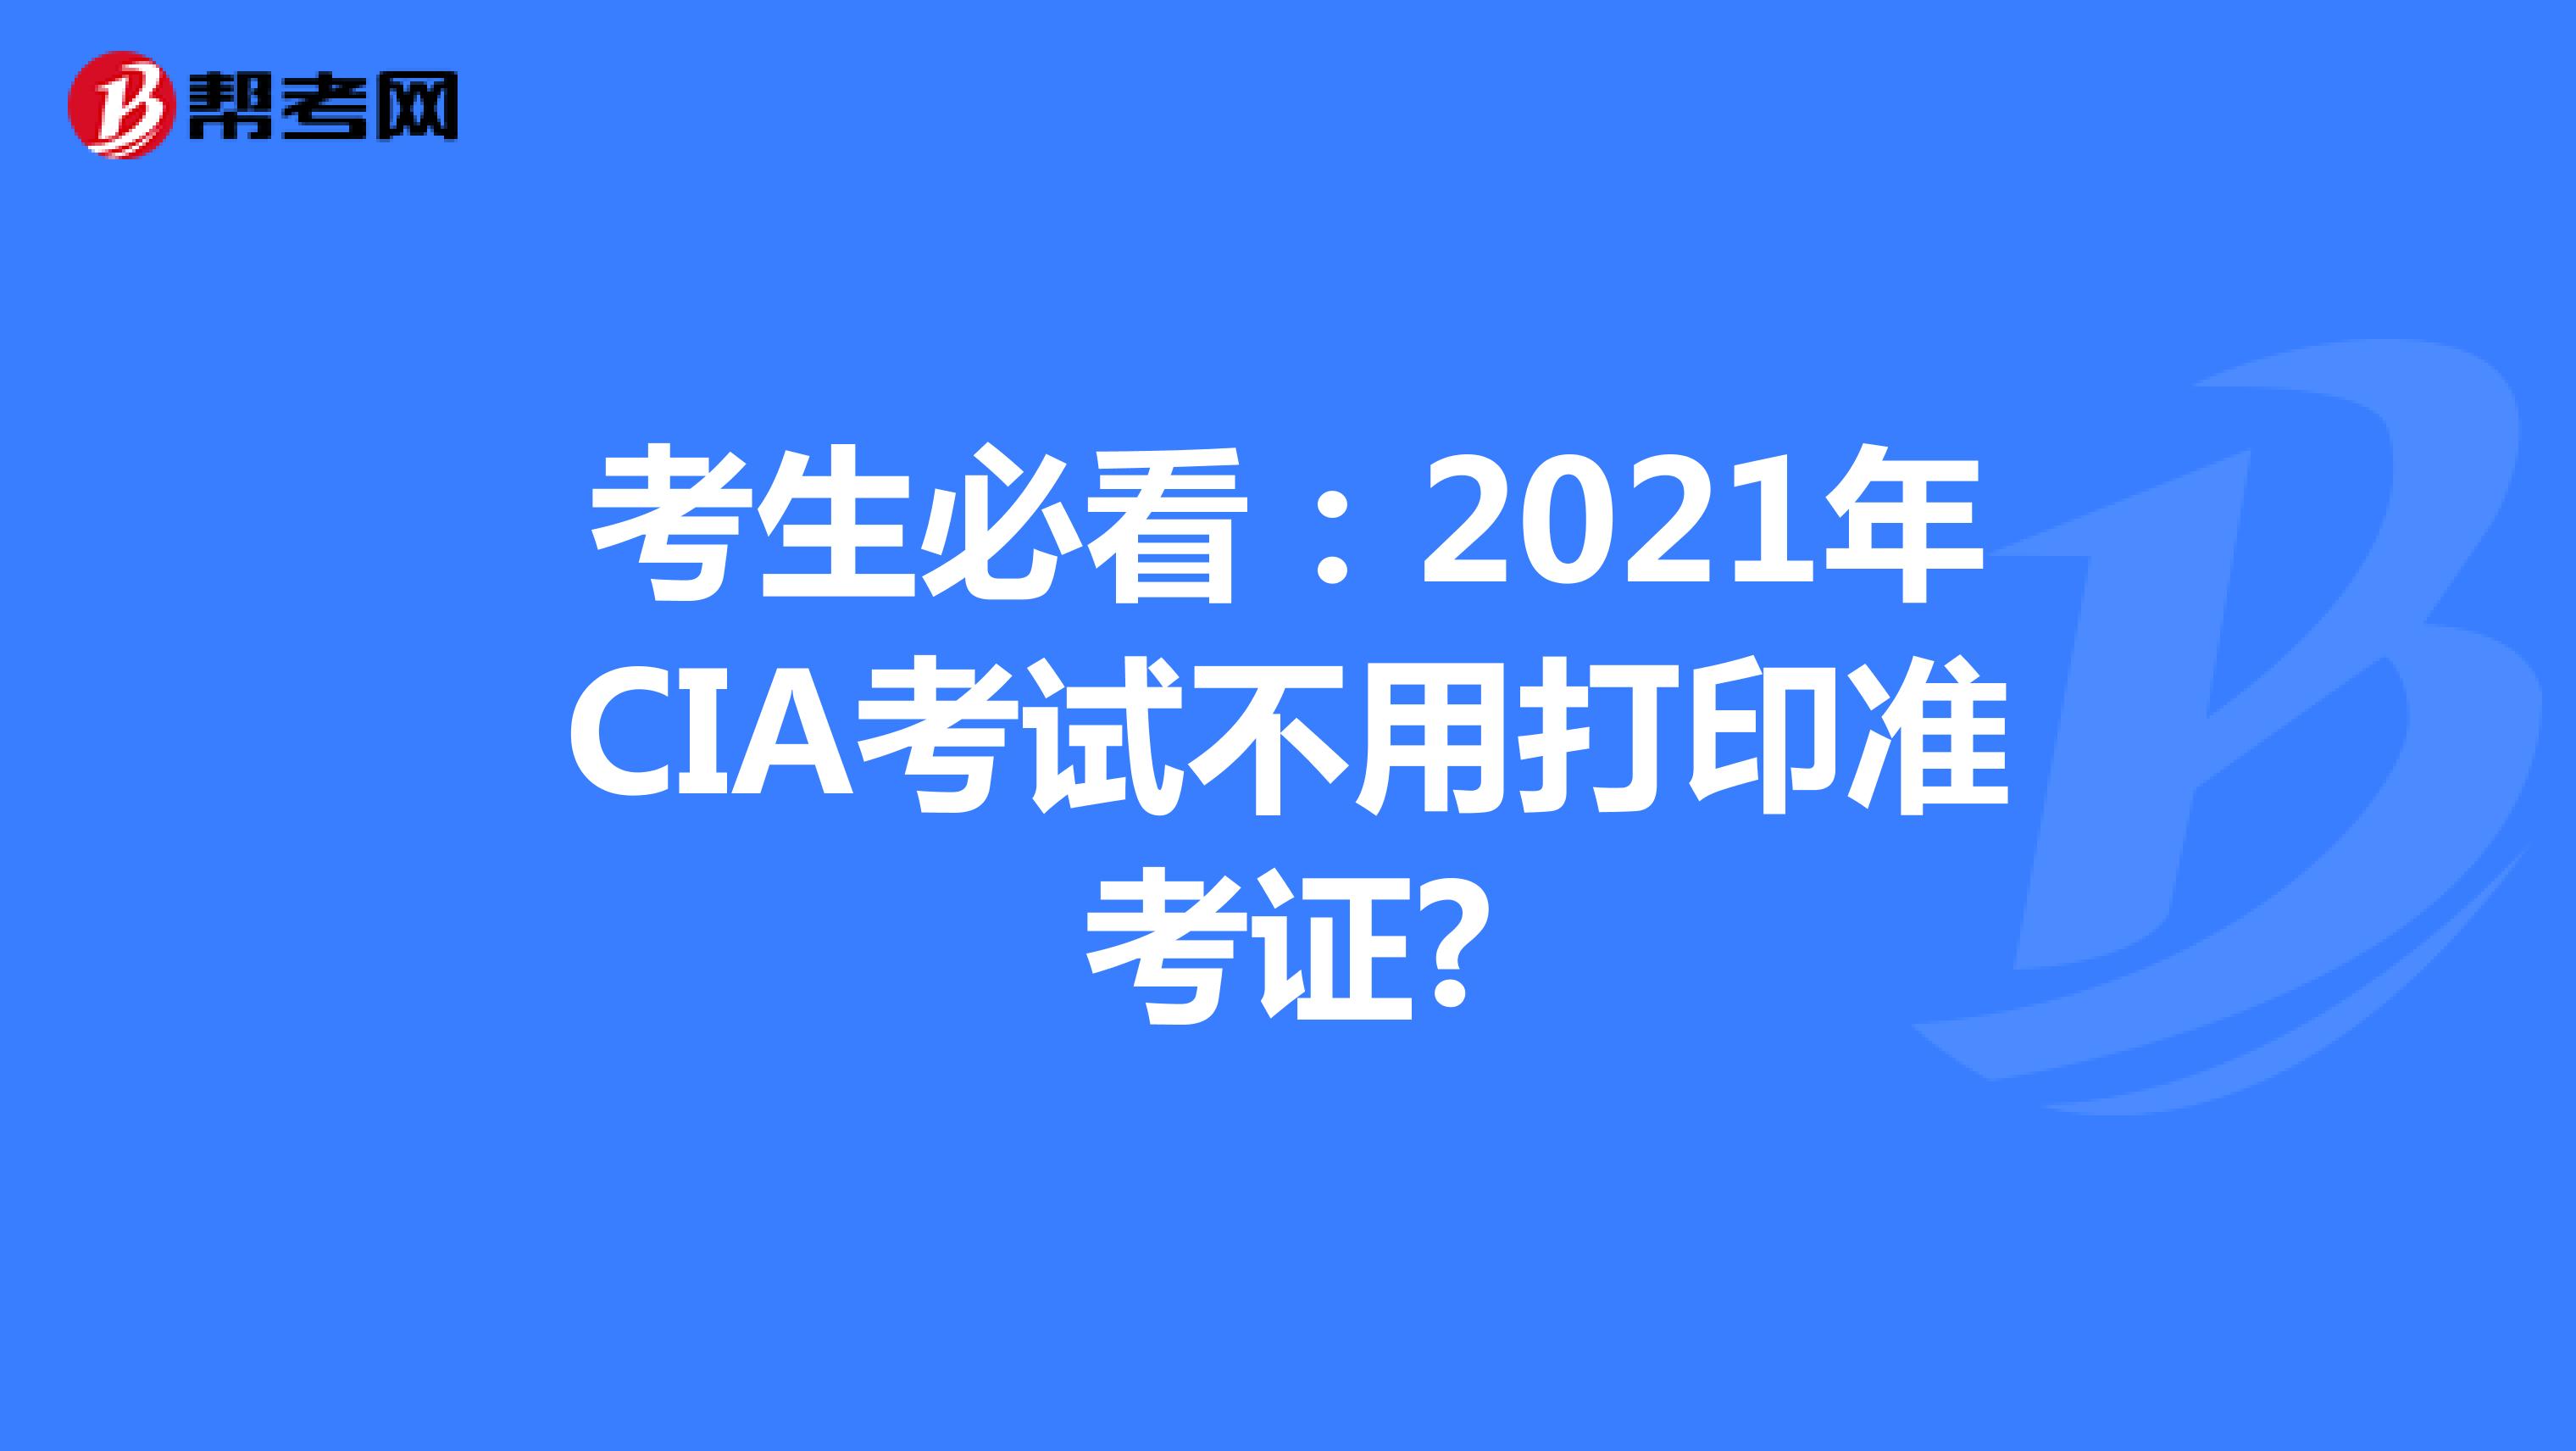 考生必看：2021年CIA考试不用打印准考证?